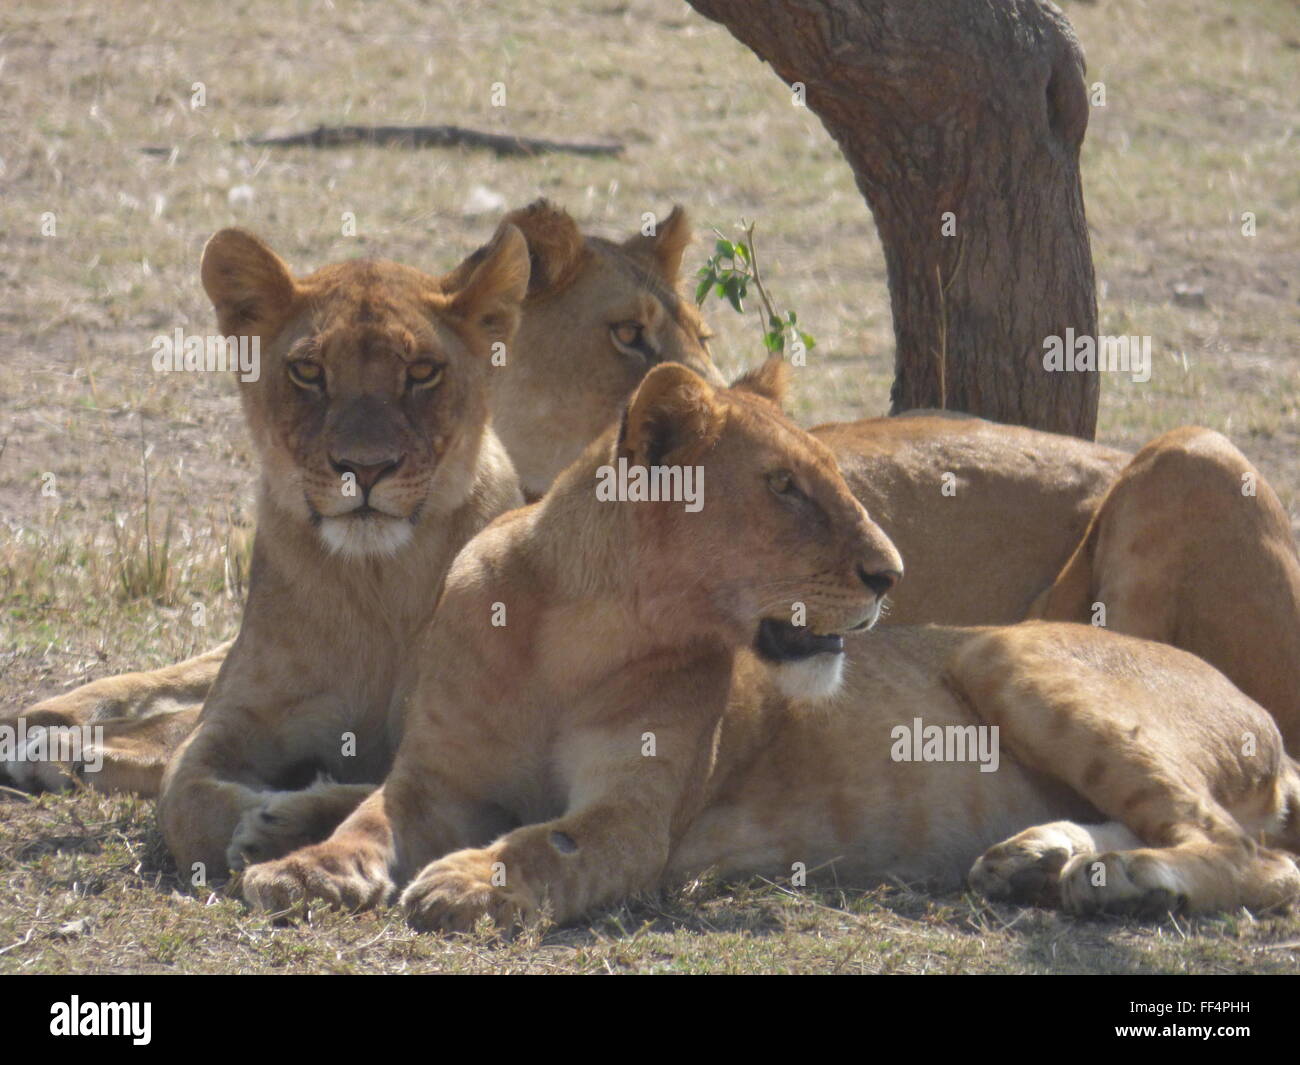 Una familia de leones hembra en el Serengeti de Tanzania, África foto de jen lombardo Foto de stock